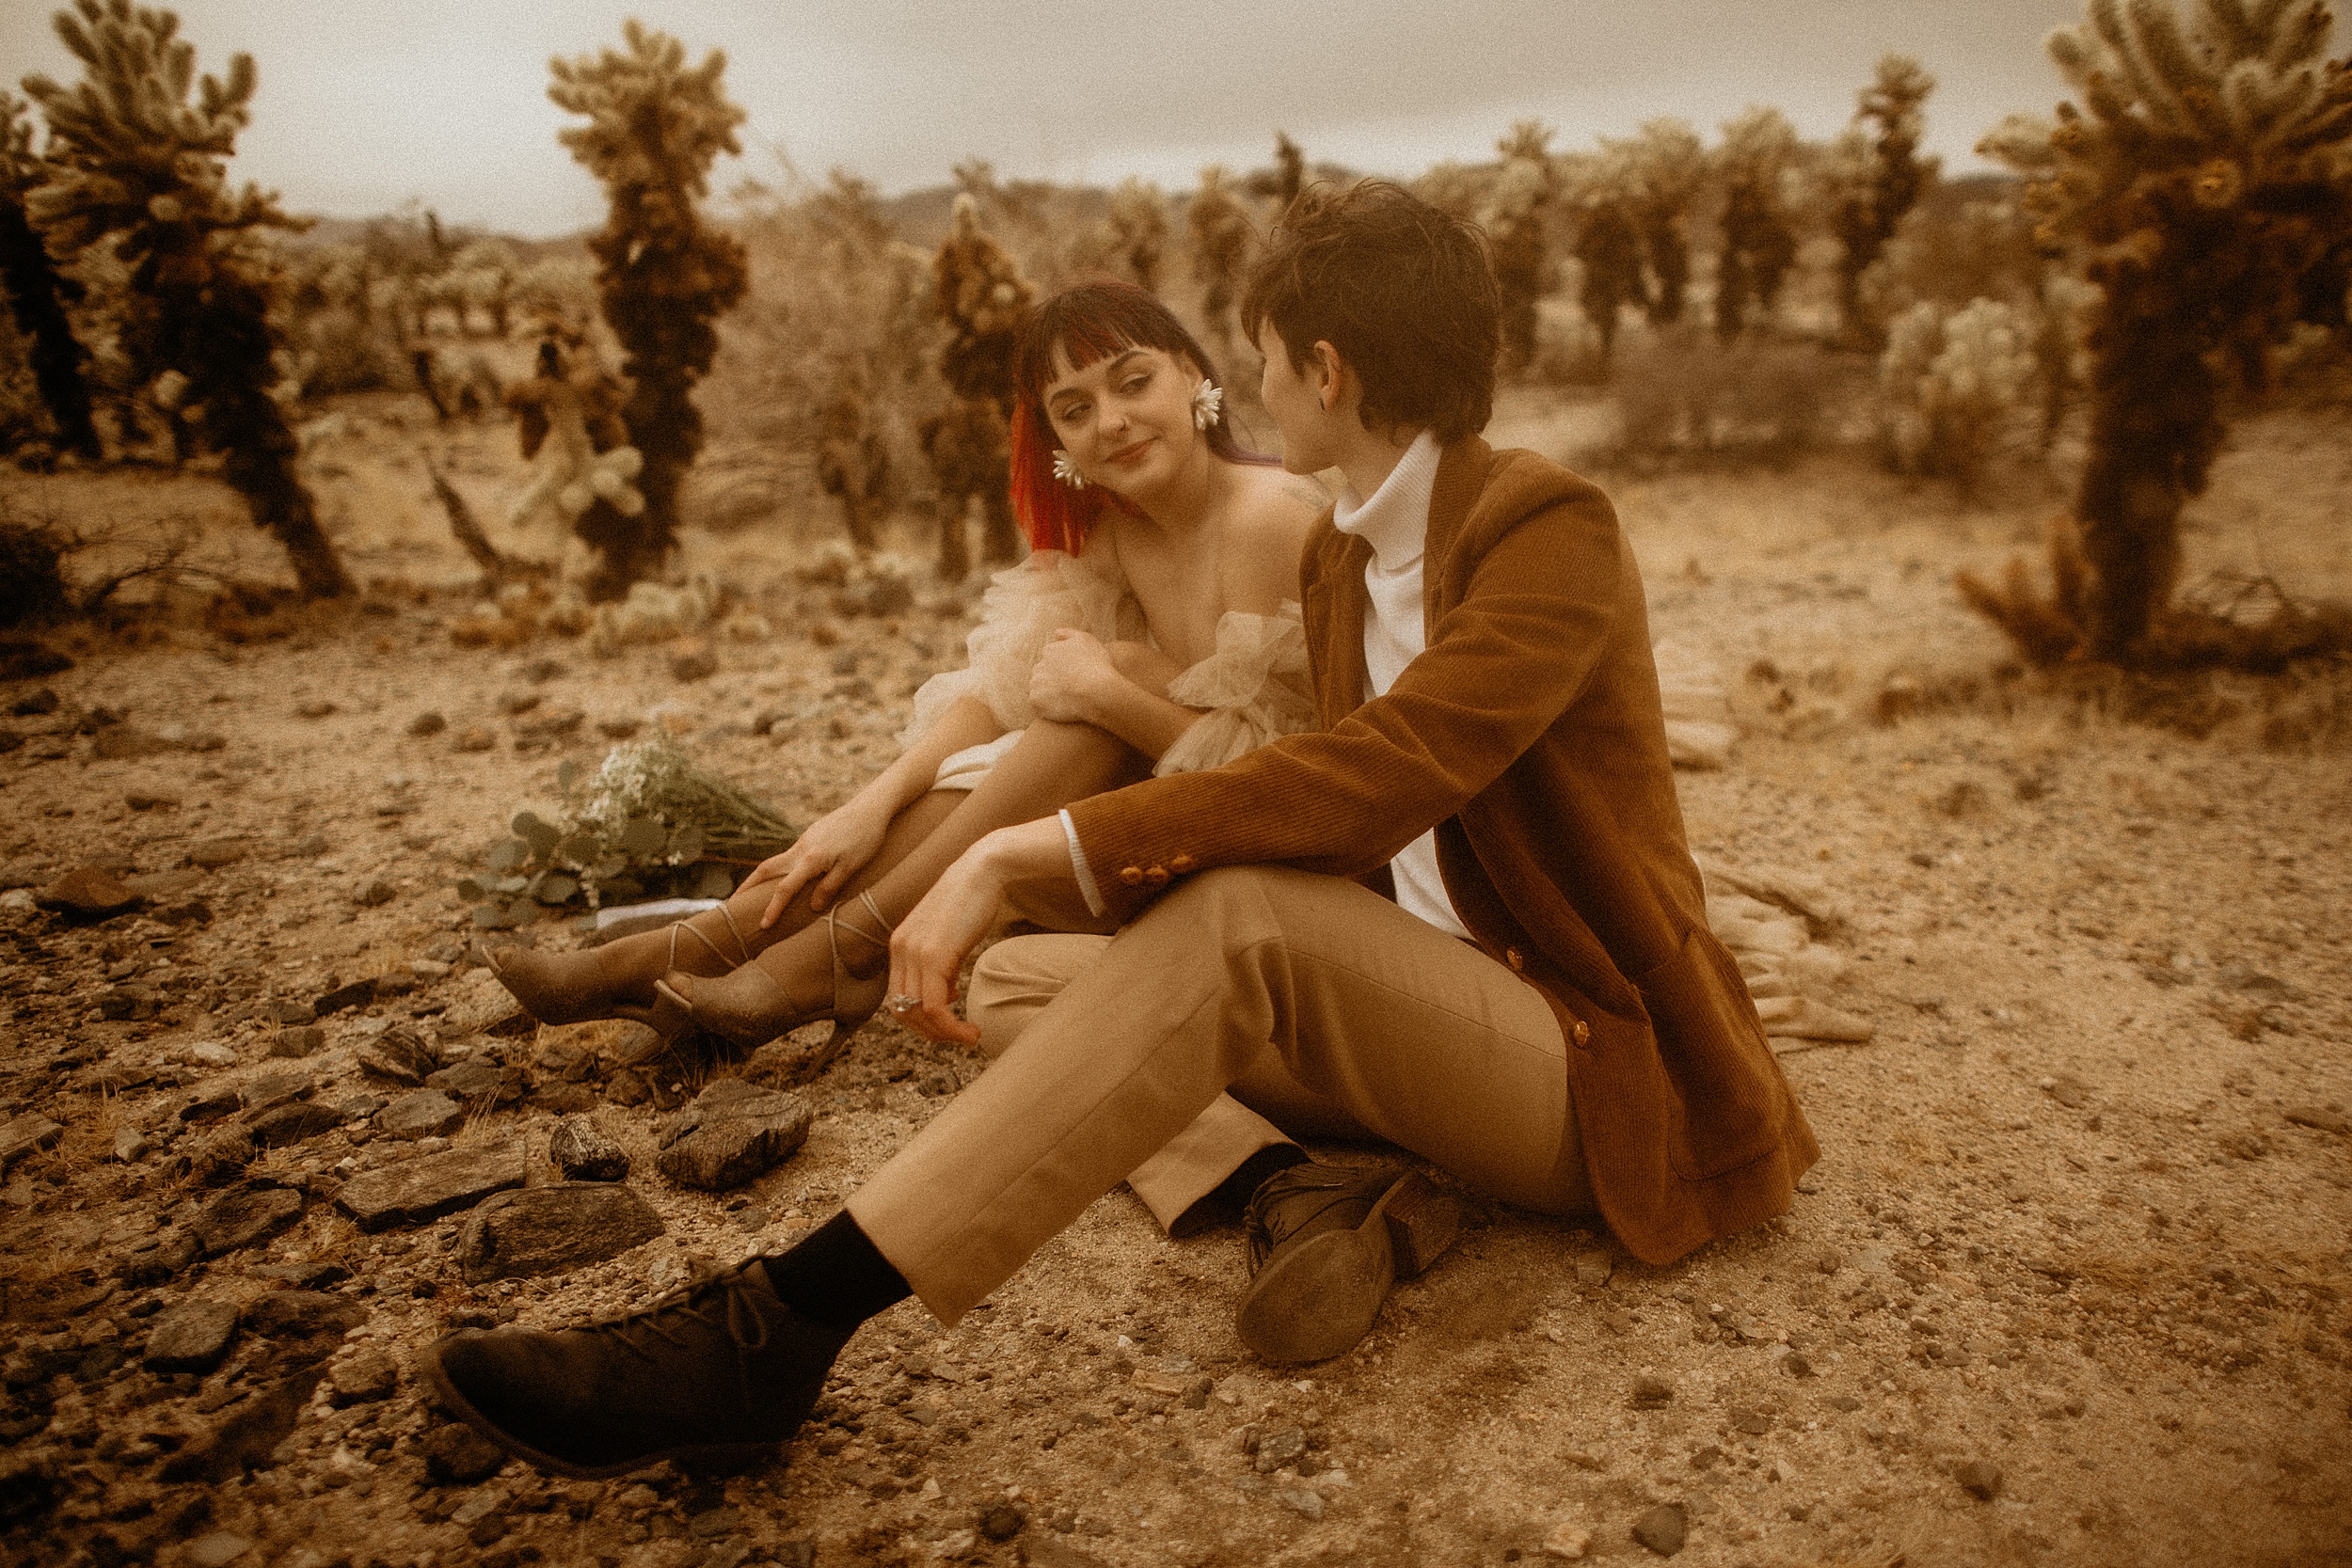 couple sitting together desert landscape